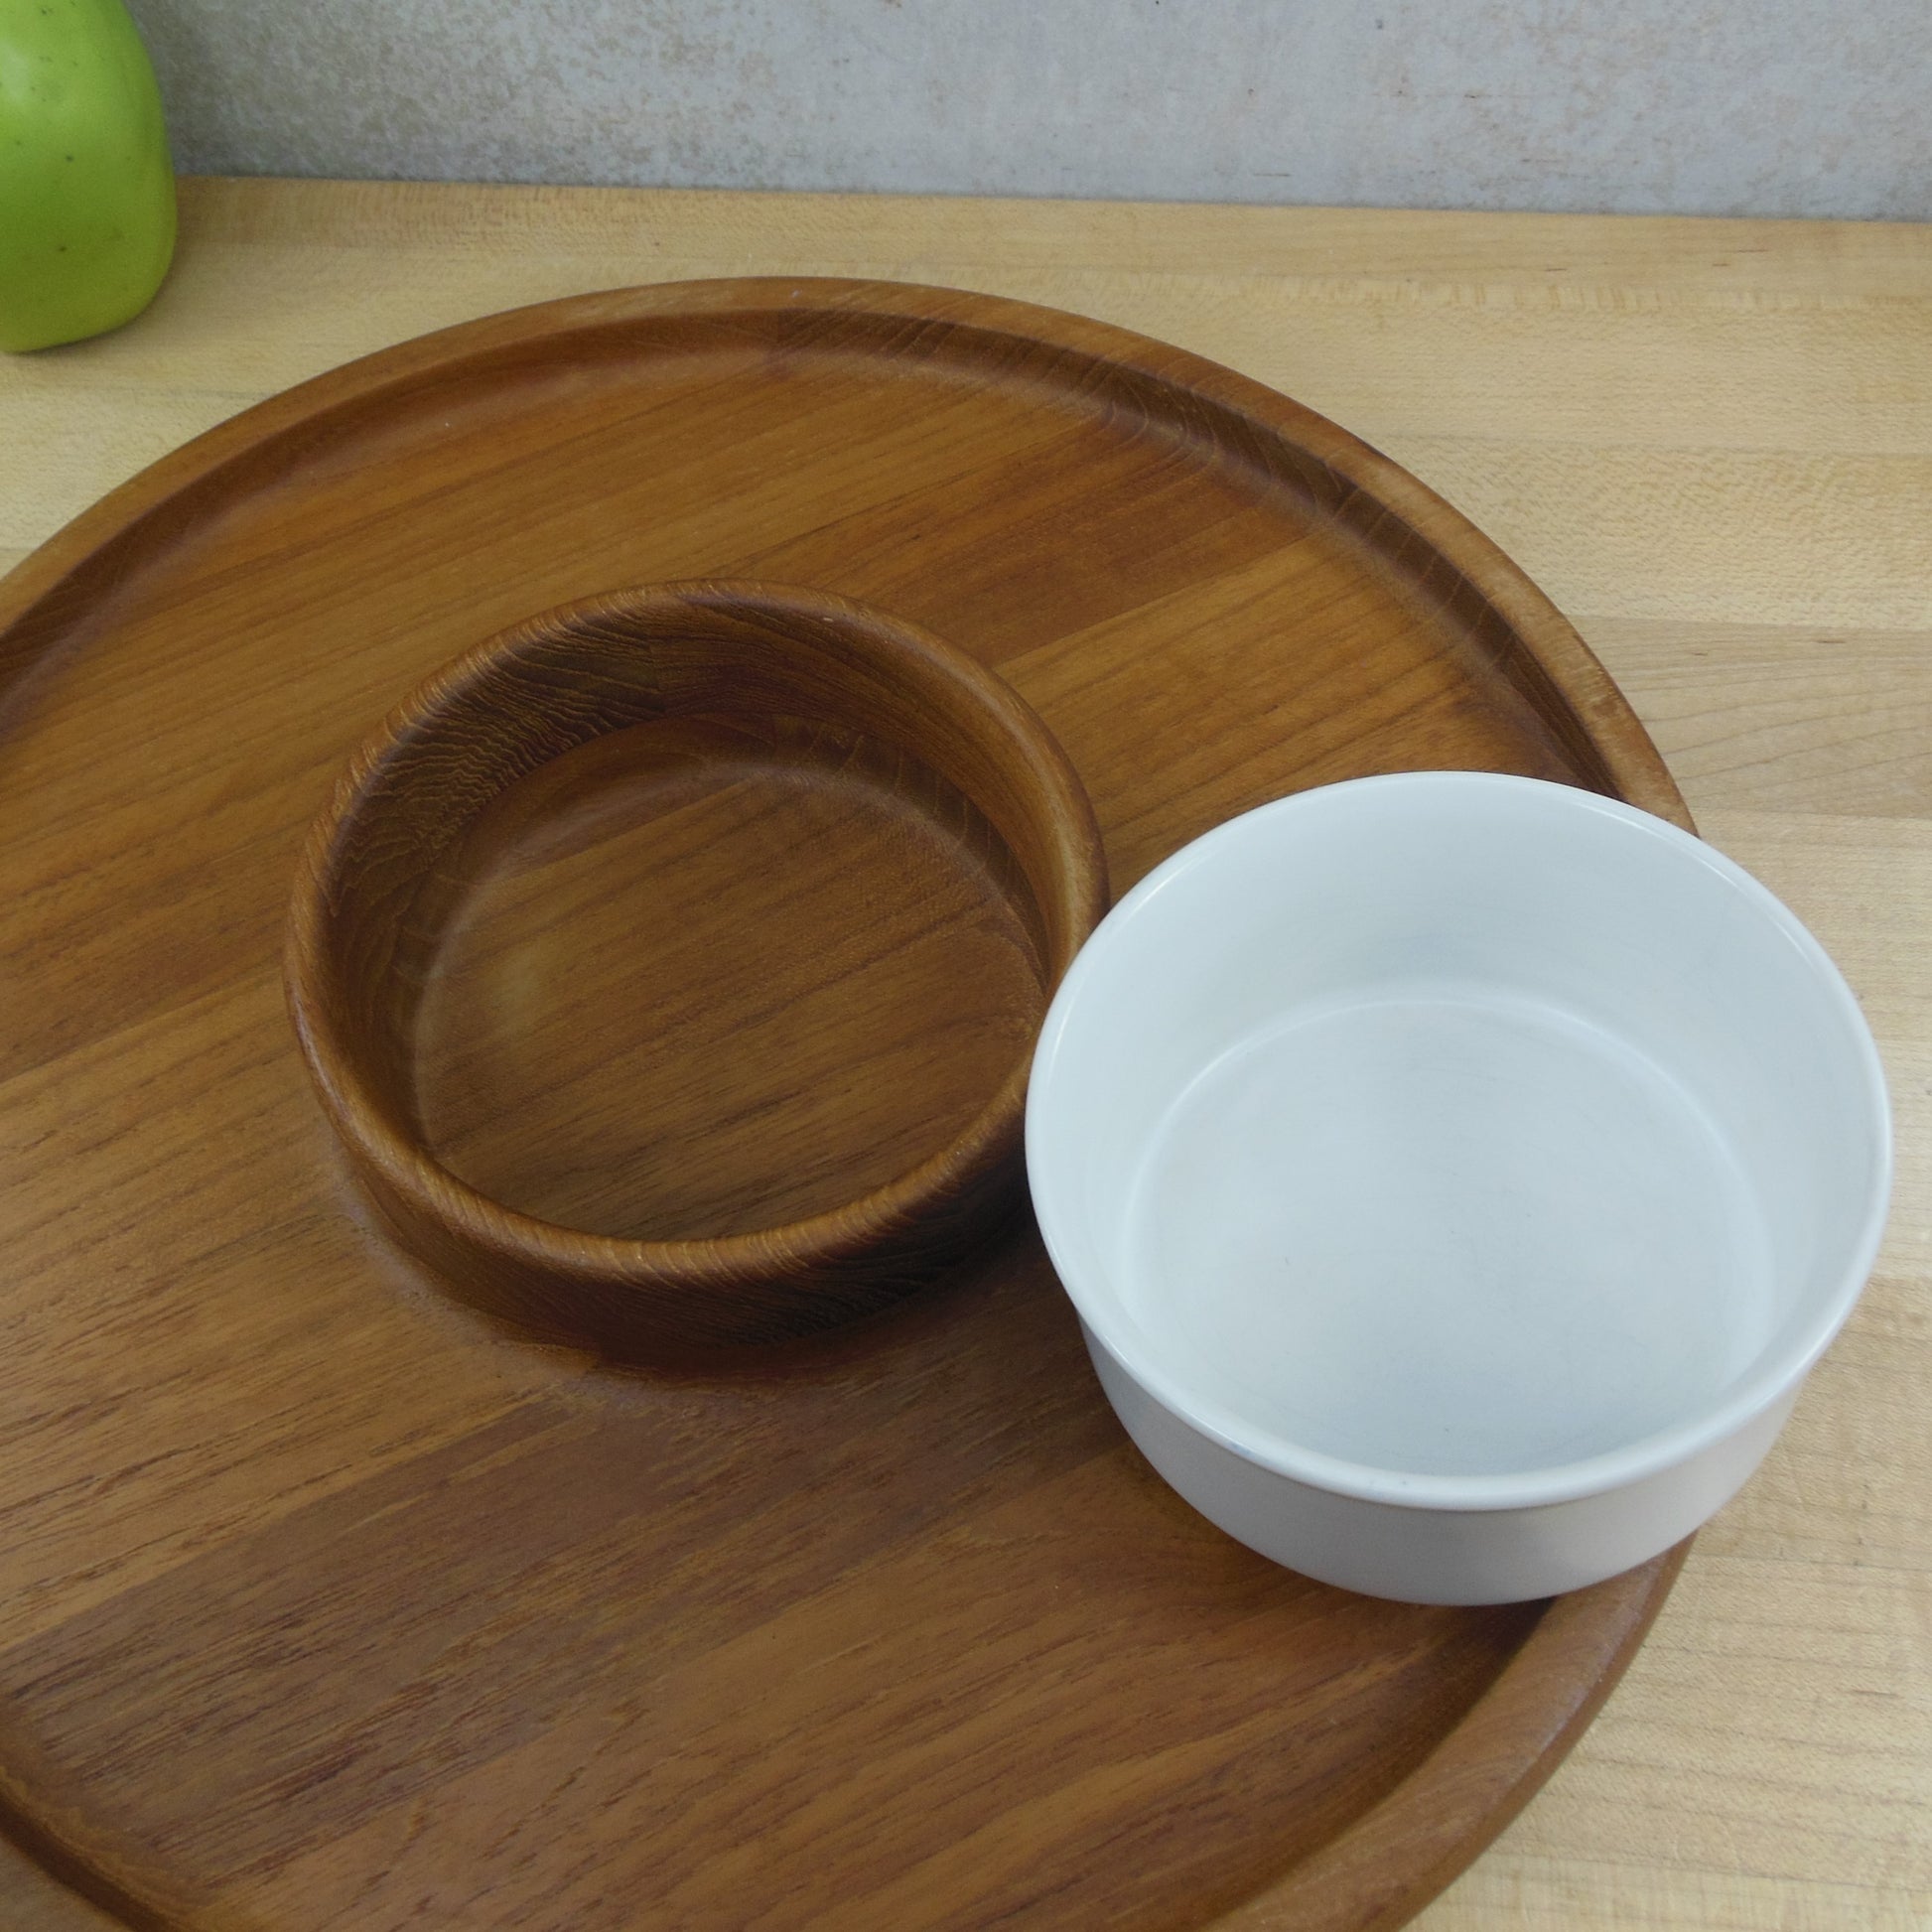 Dansk JHQ Teak Chip Dip Appetizer Platter with Ceramic Bowl vintage